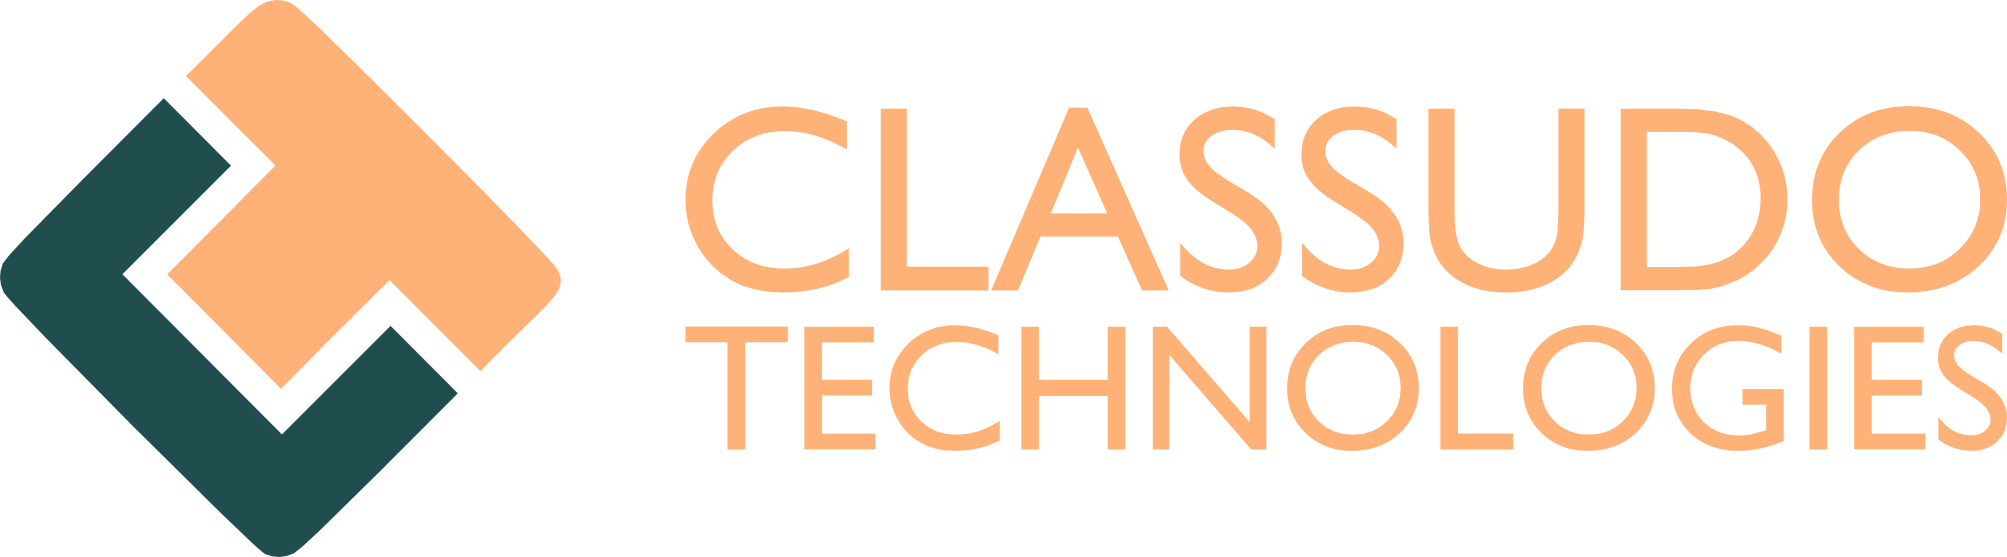 Classudo Technologies logo